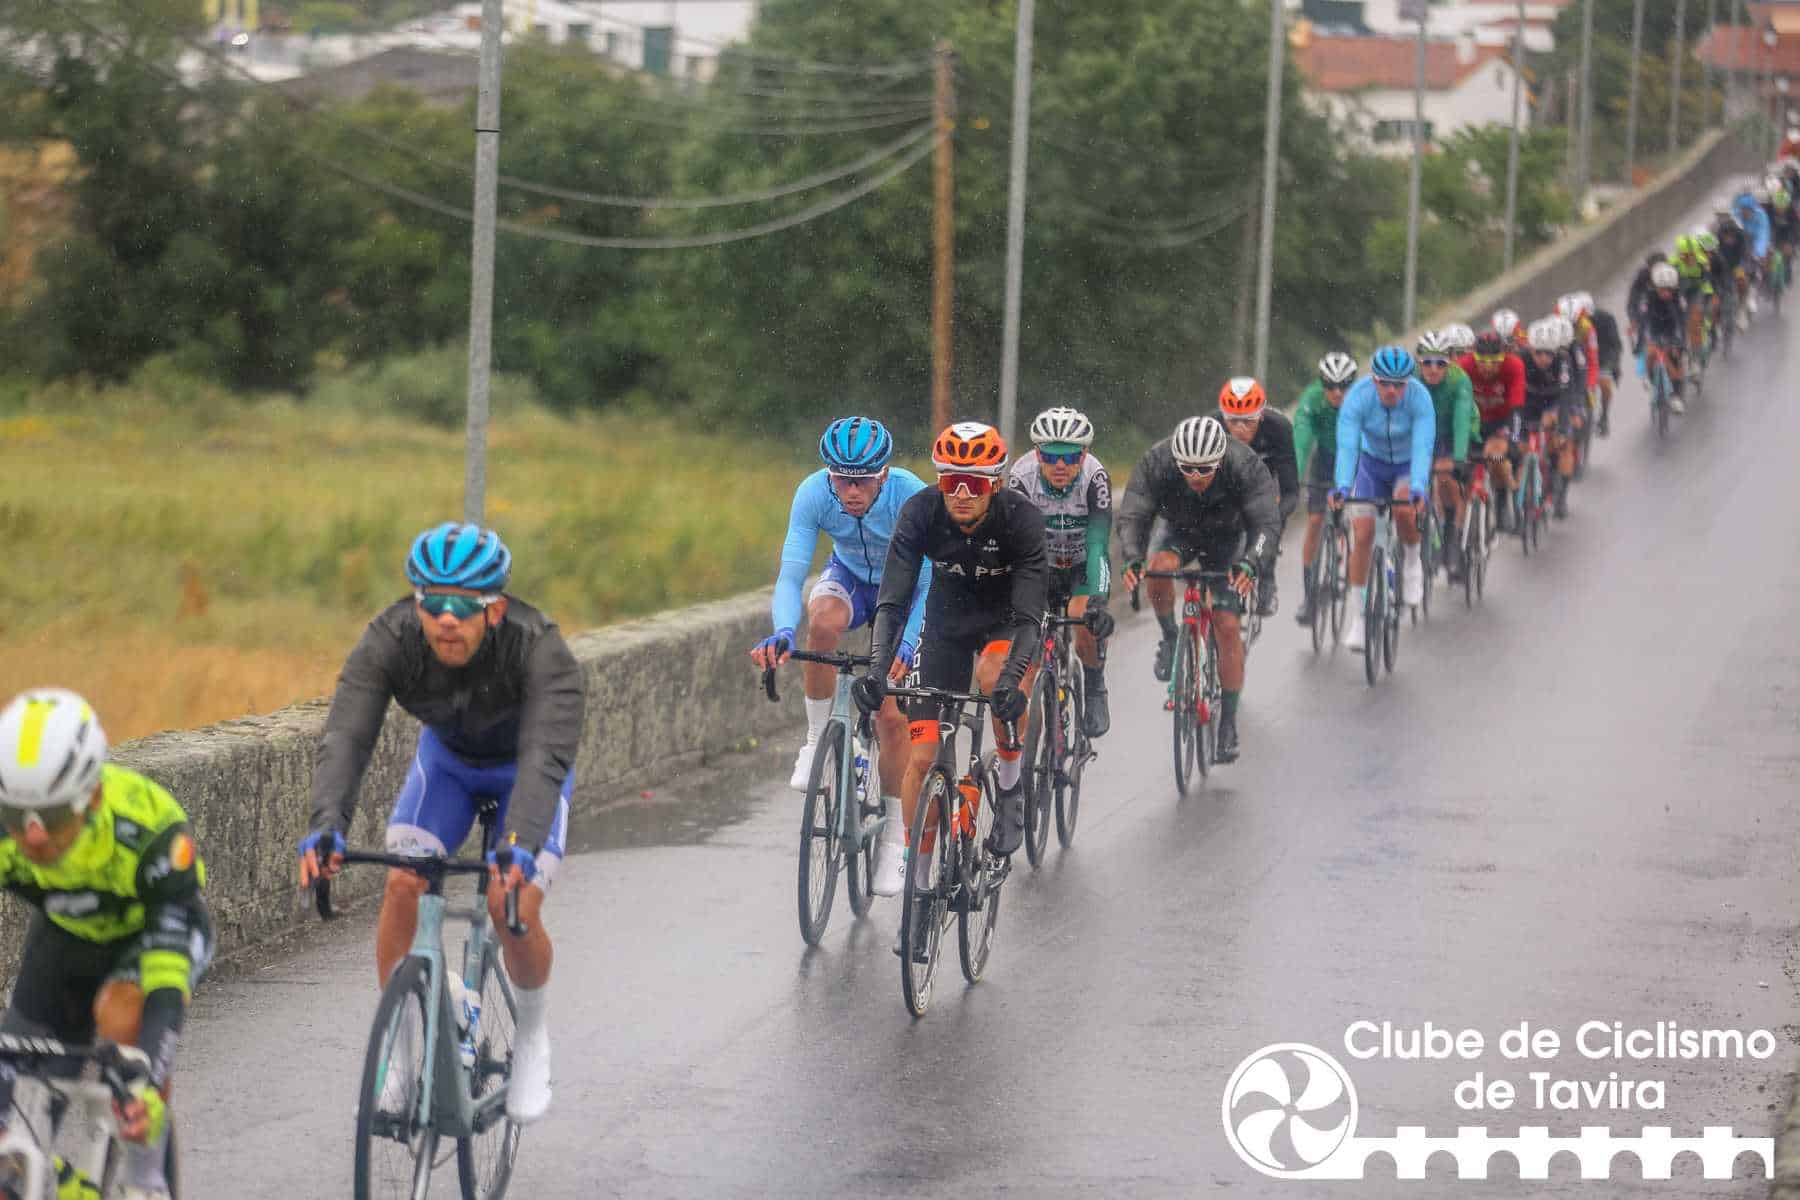 Clube de Ciclismo de Tavira - Grande Prémio Internacional Beiras e Serra da Estrela 202331